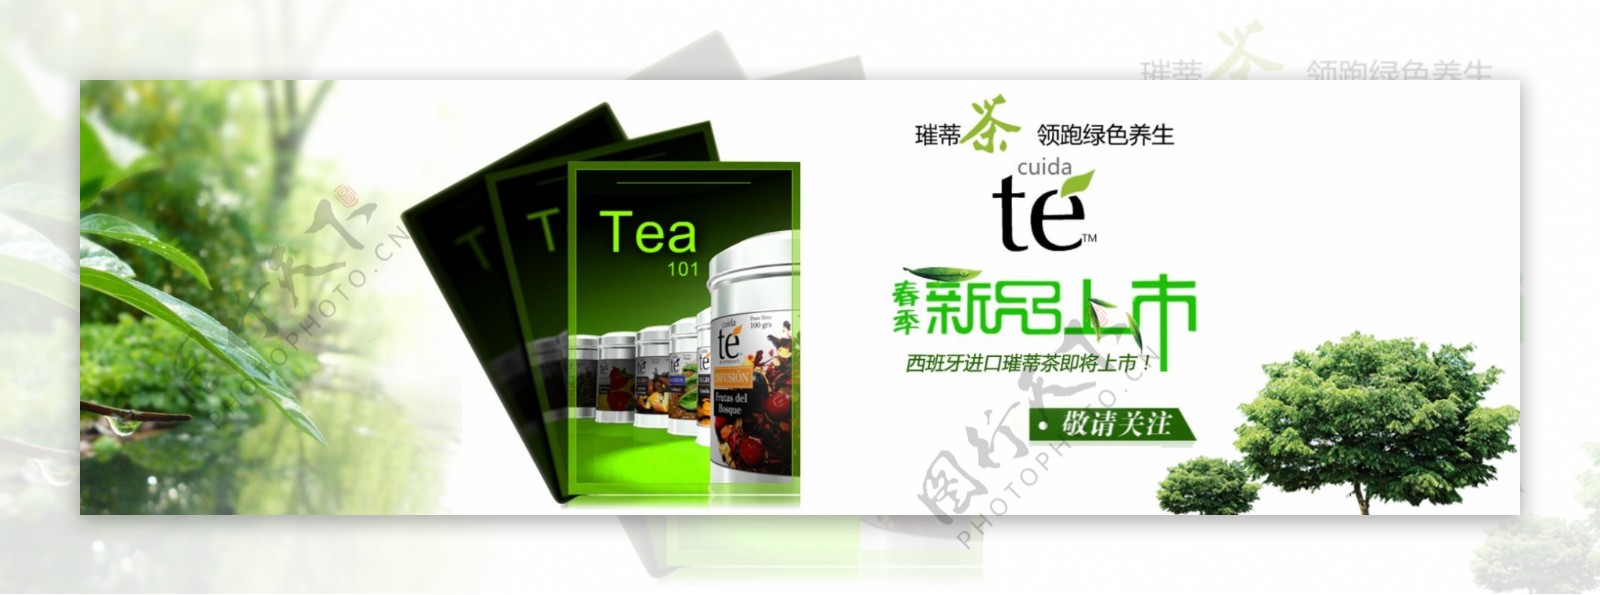 新品预告进口茶海报